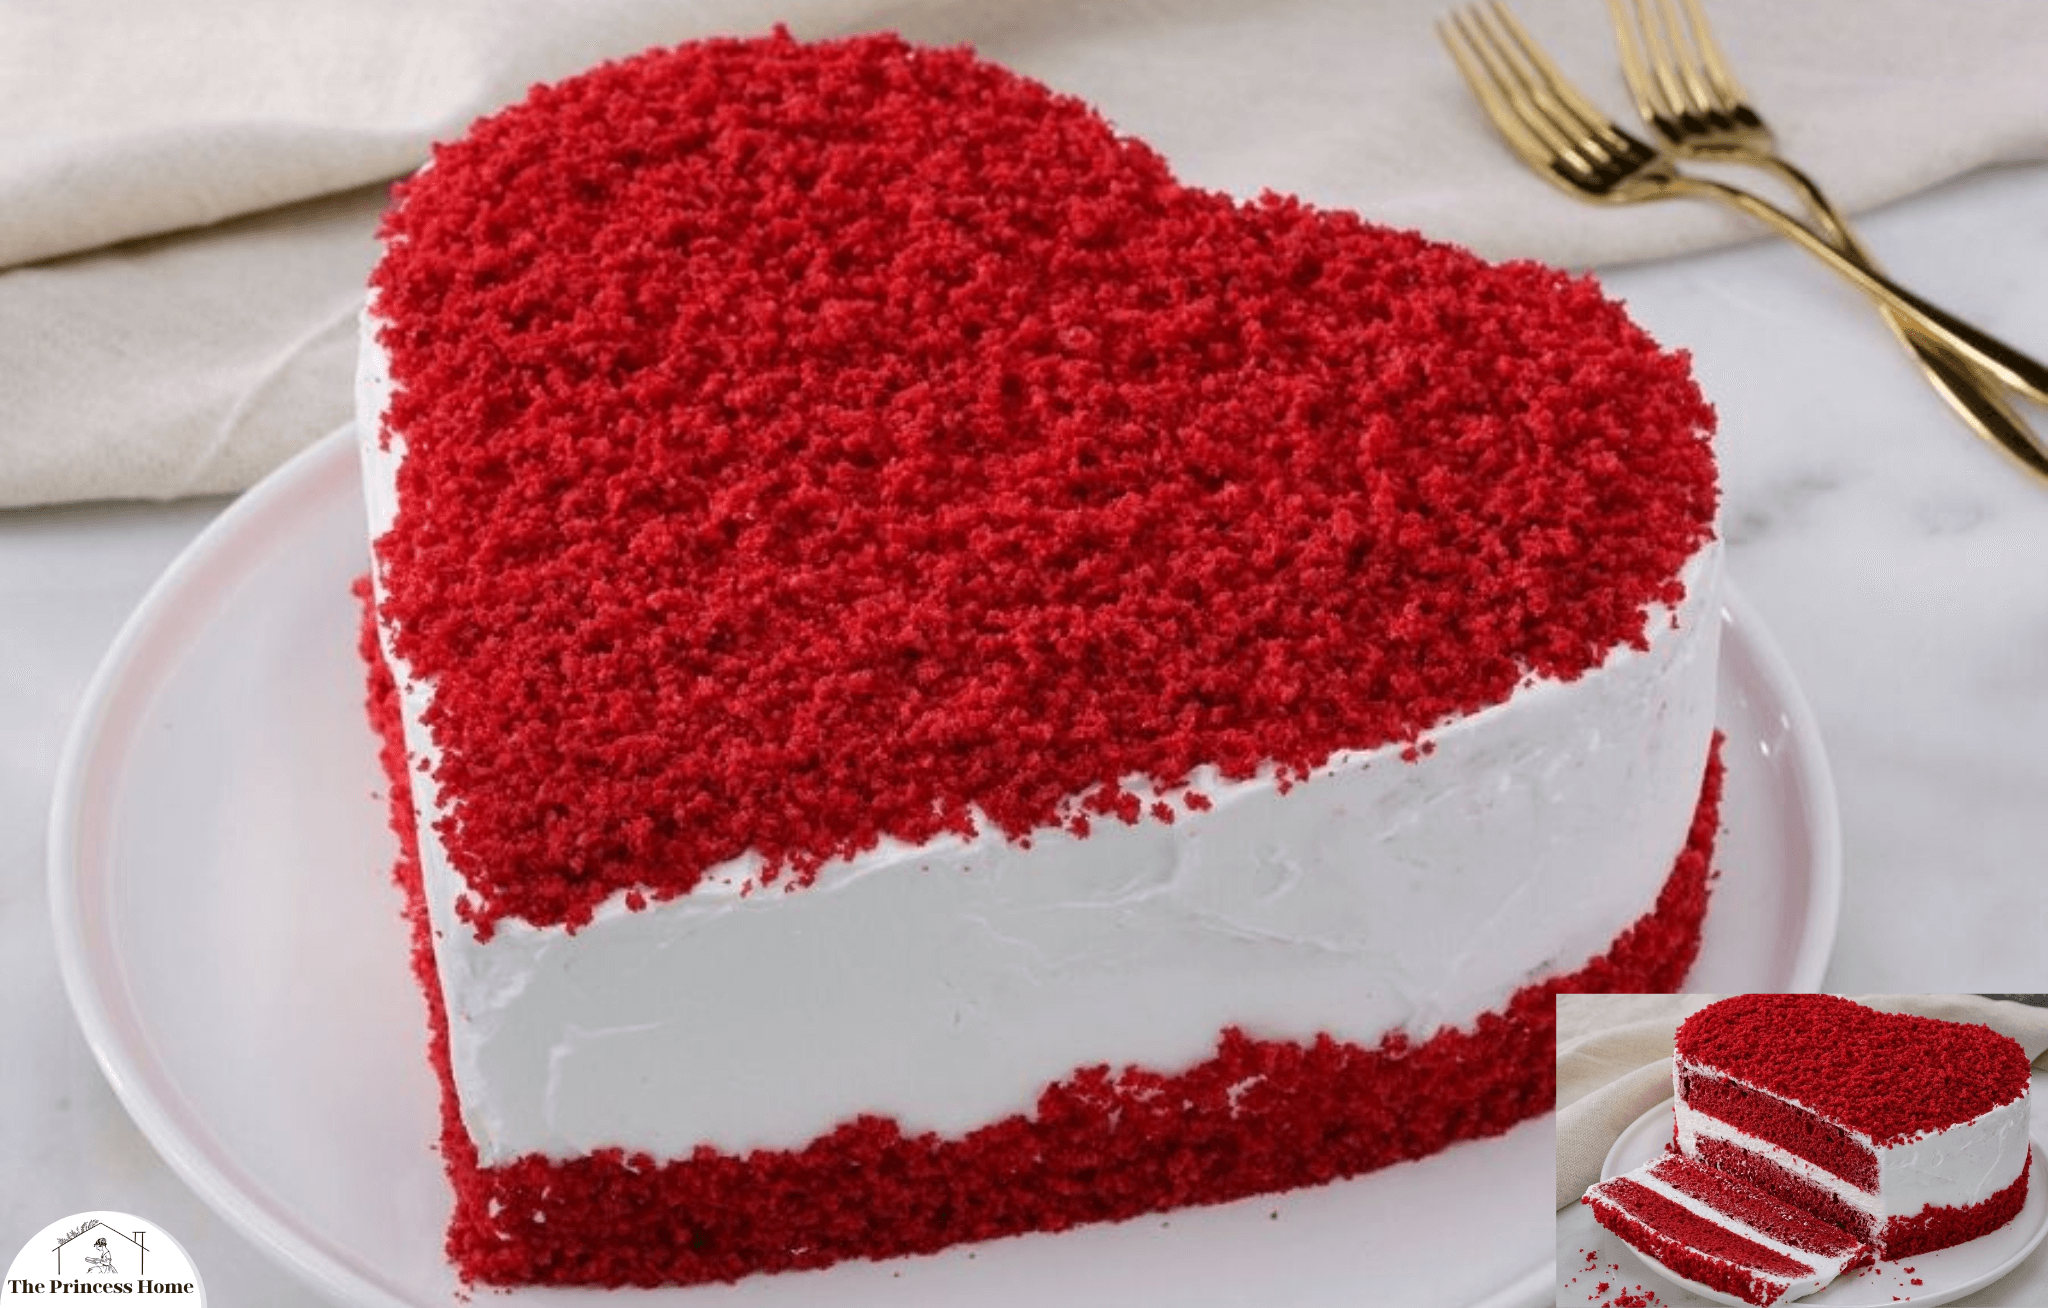 3.Decadent Red Velvet Cake: